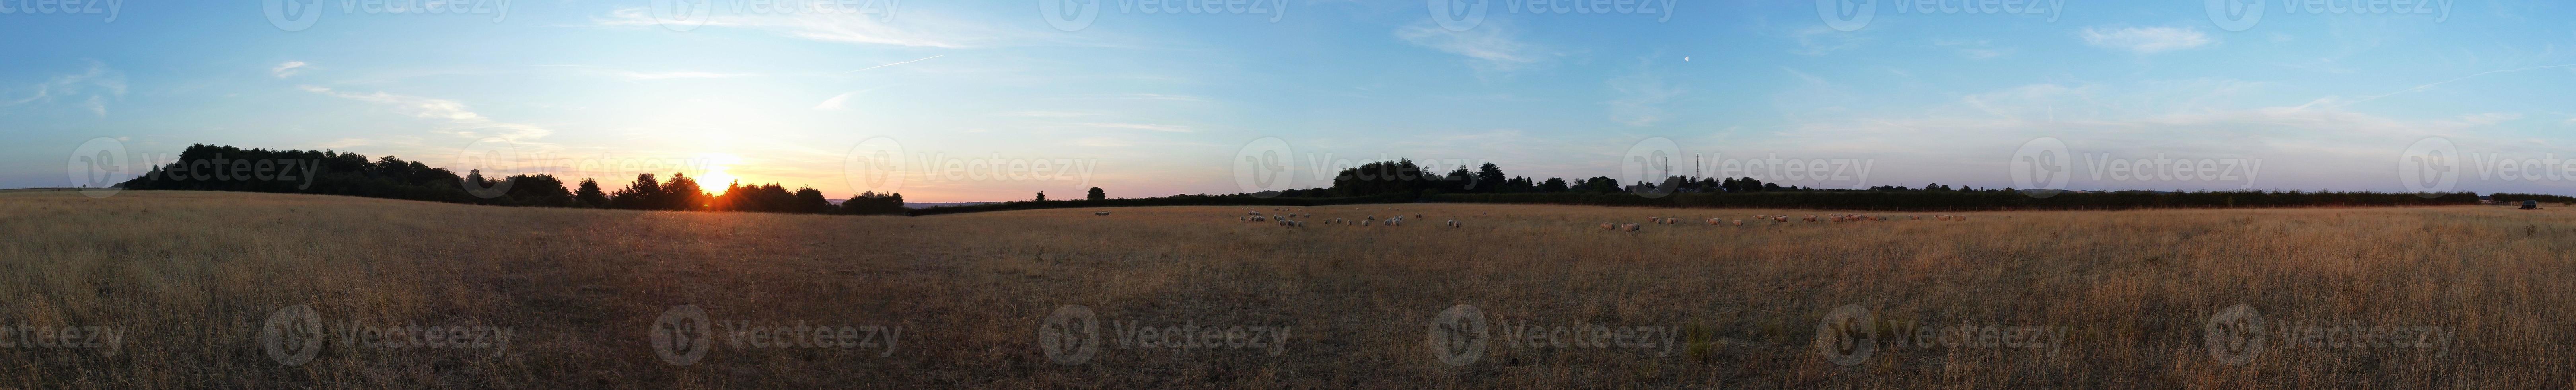 Blick aus der Vogelperspektive auf britische Lamm- und Schaffarmen auf dem Land von England, Großbritannien, es war Sonnenuntergangszeit foto